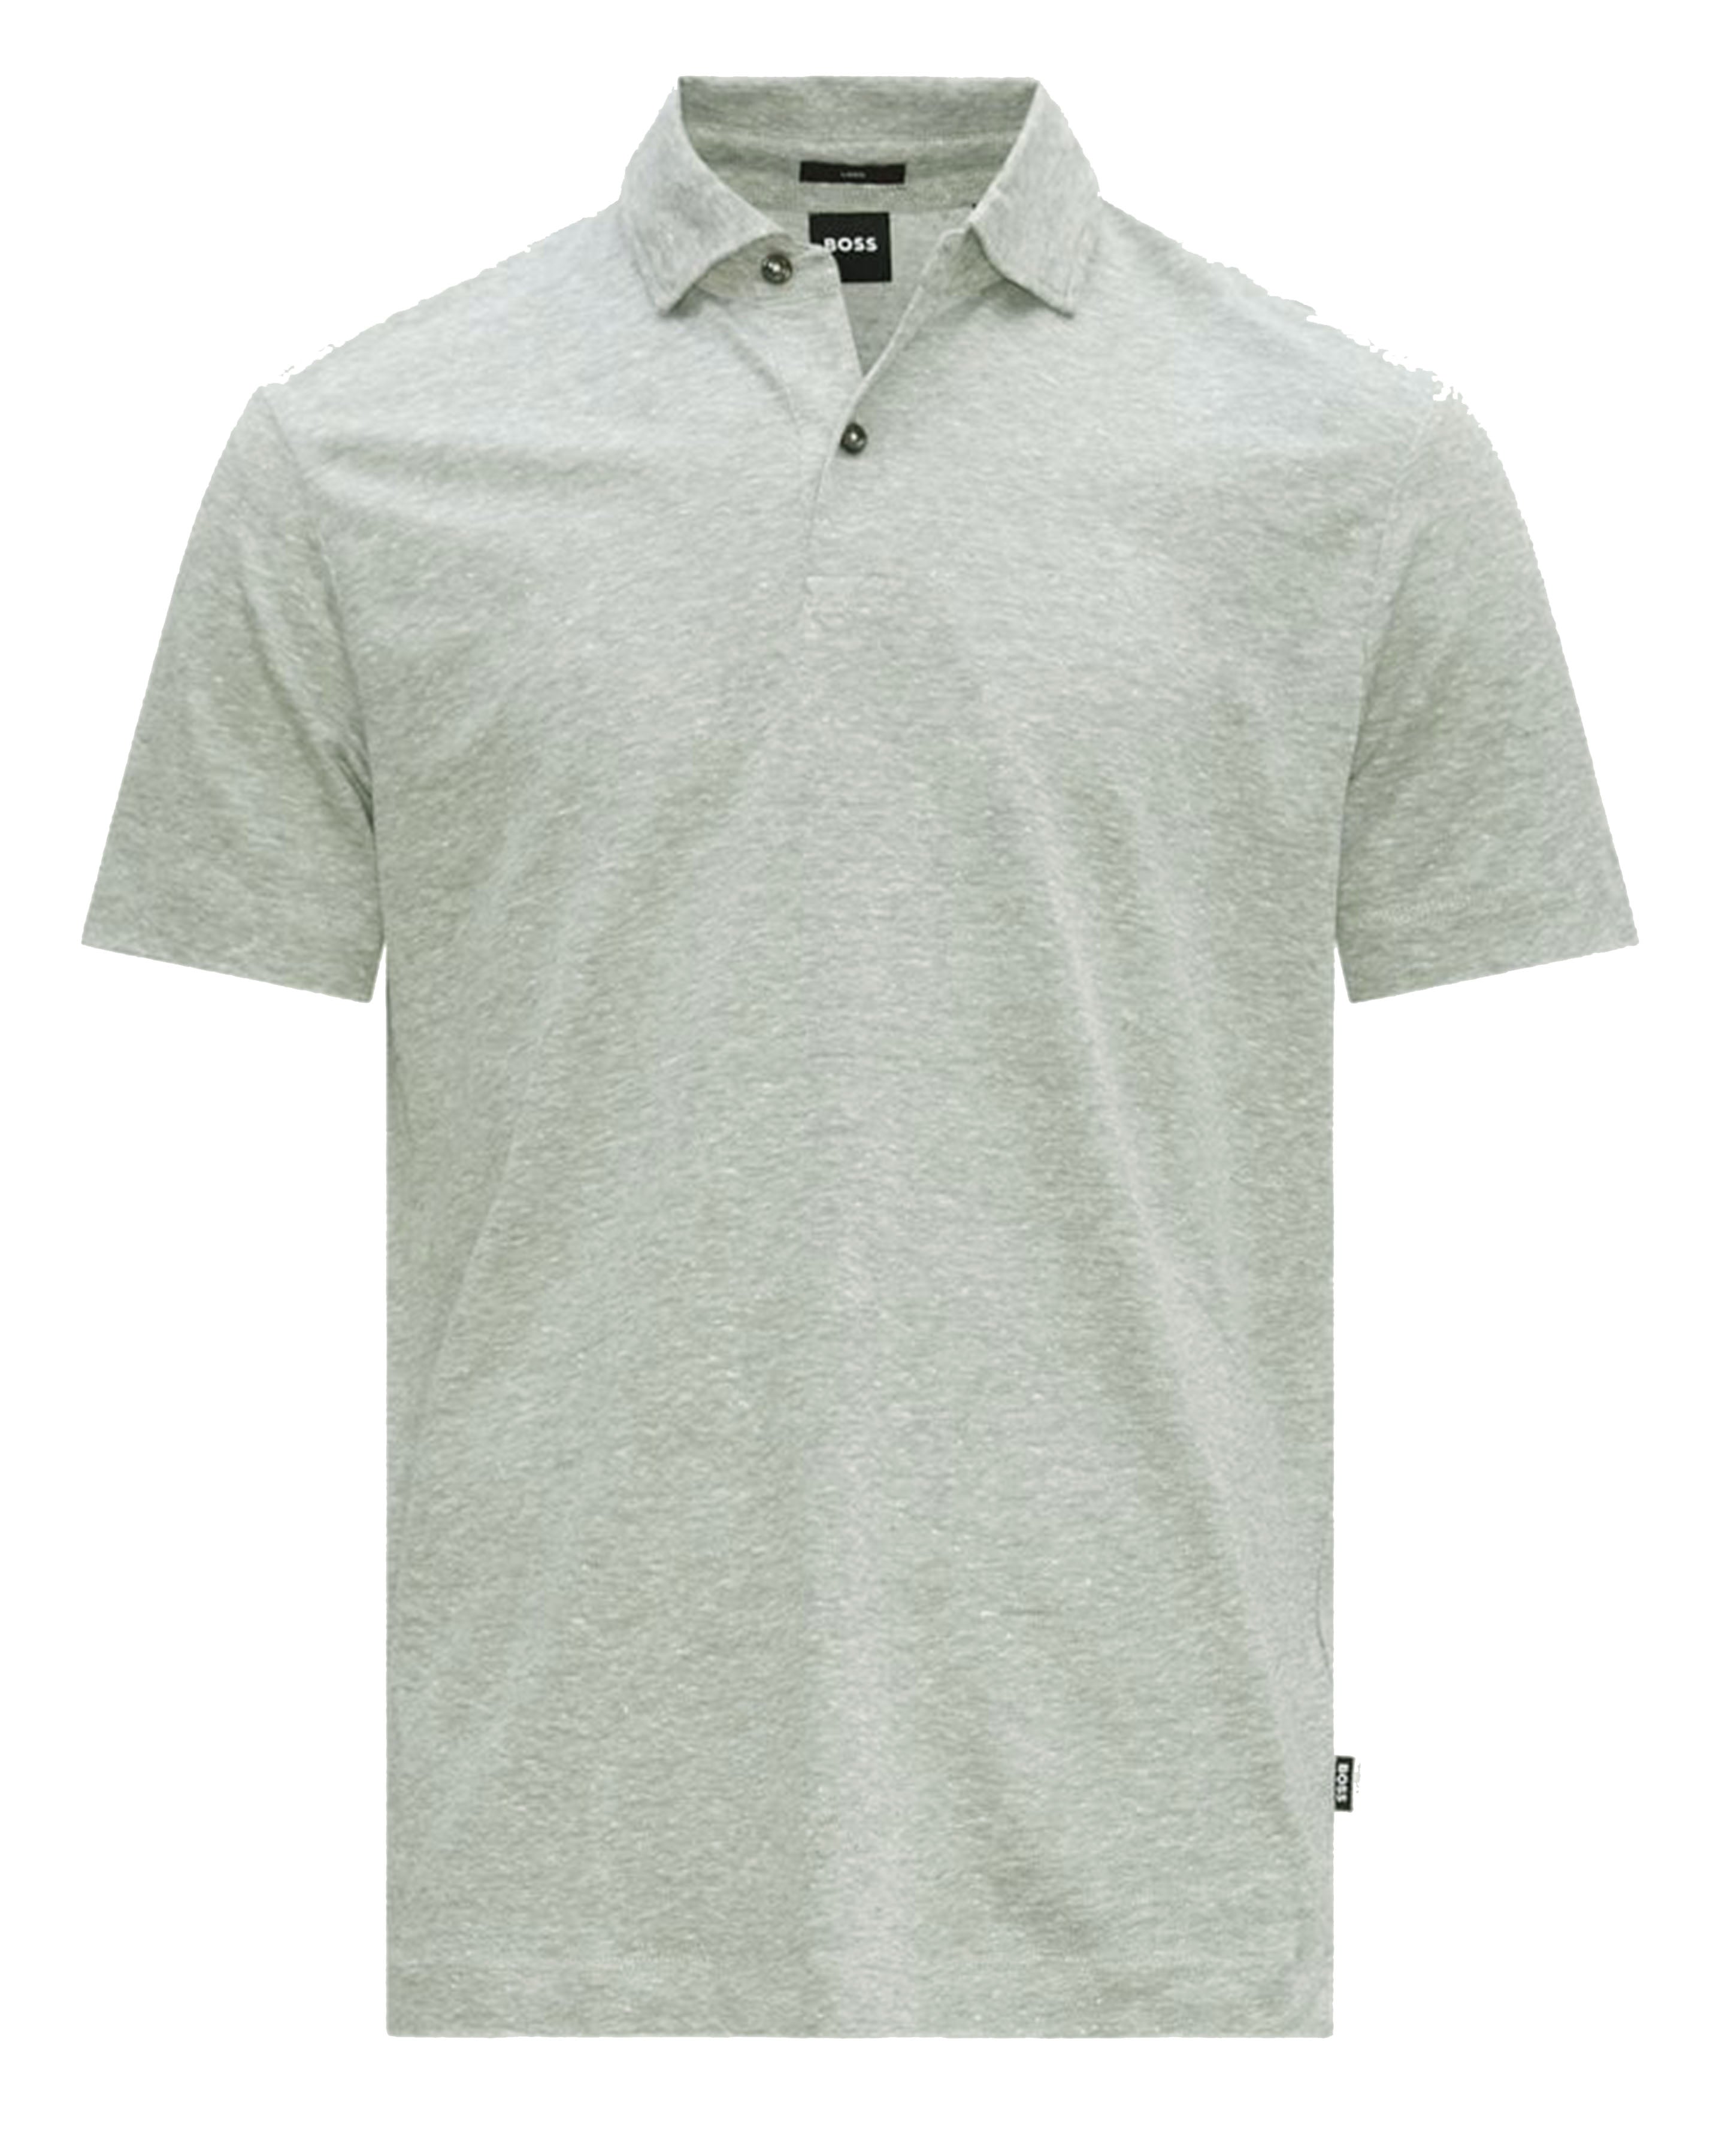 BOSS - PRESS 54 - Open Green Regular Fit Polo Shirt In 2-Tone Linen 50486183 343